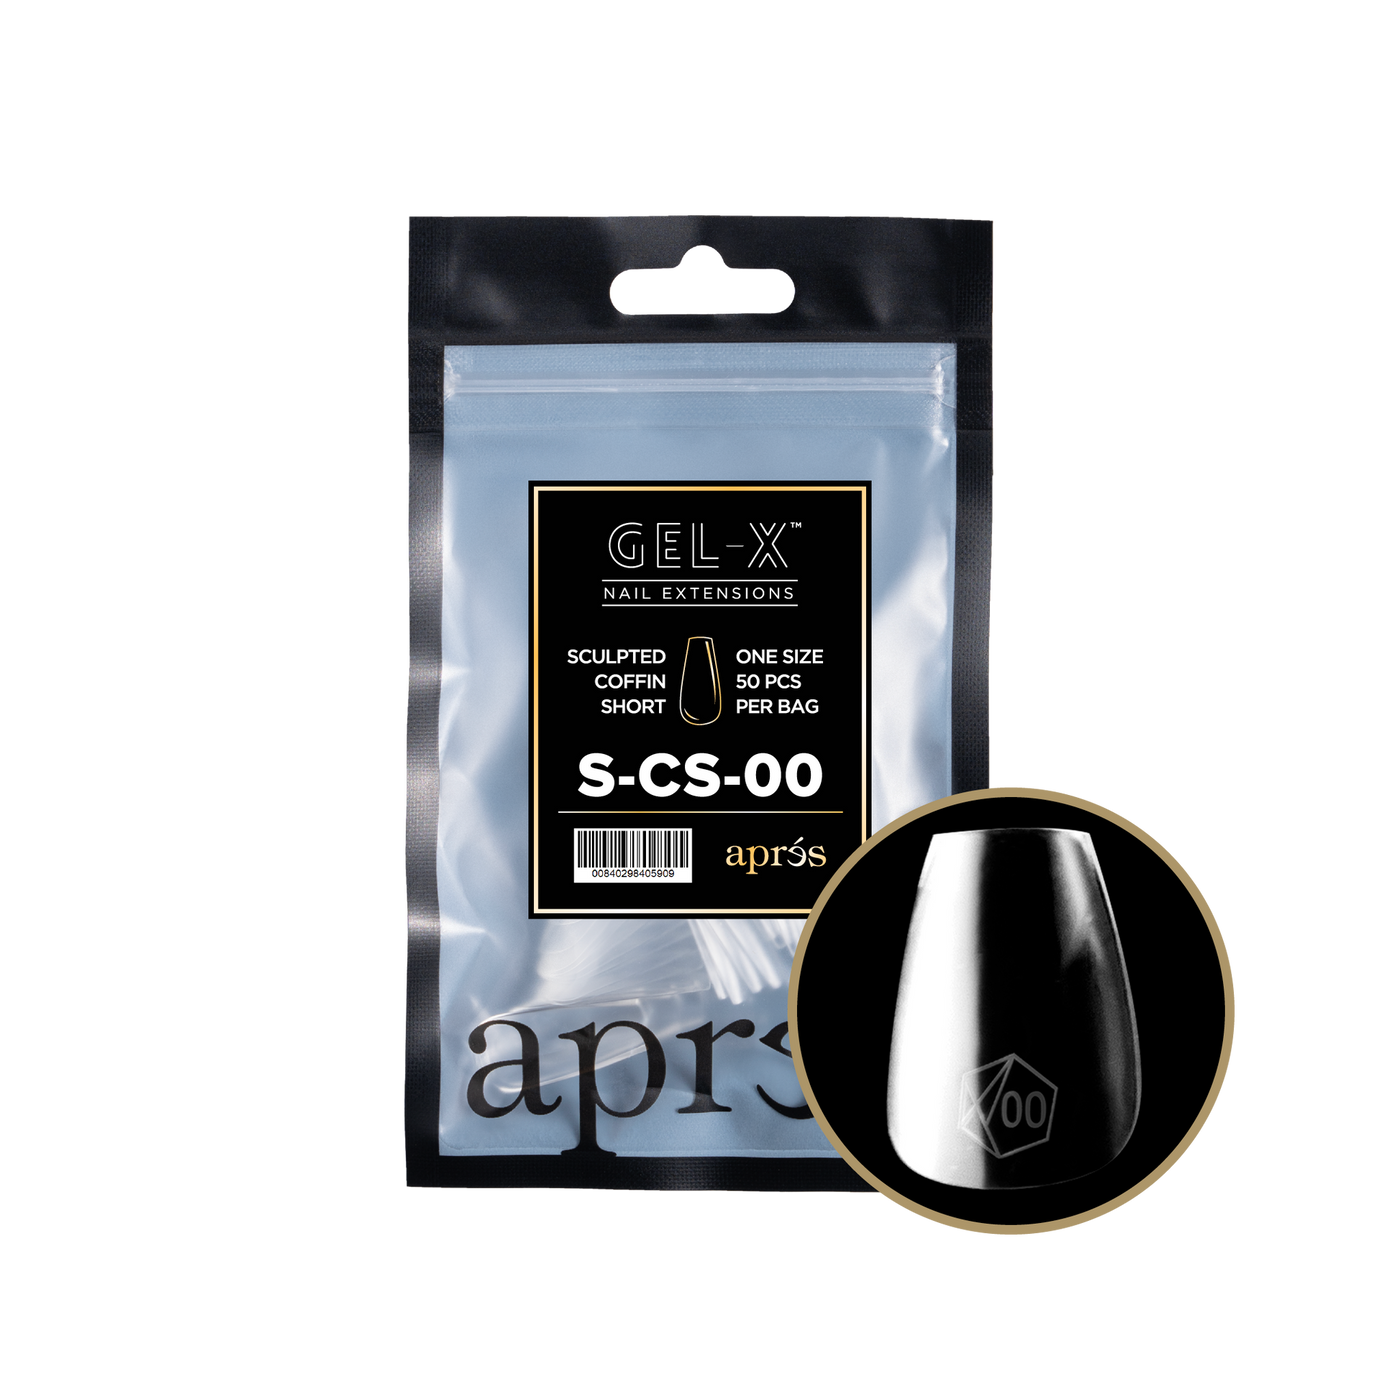 APRES - GEL-X® SCULPTED COFFIN SHORT REFILL BAG 2.0